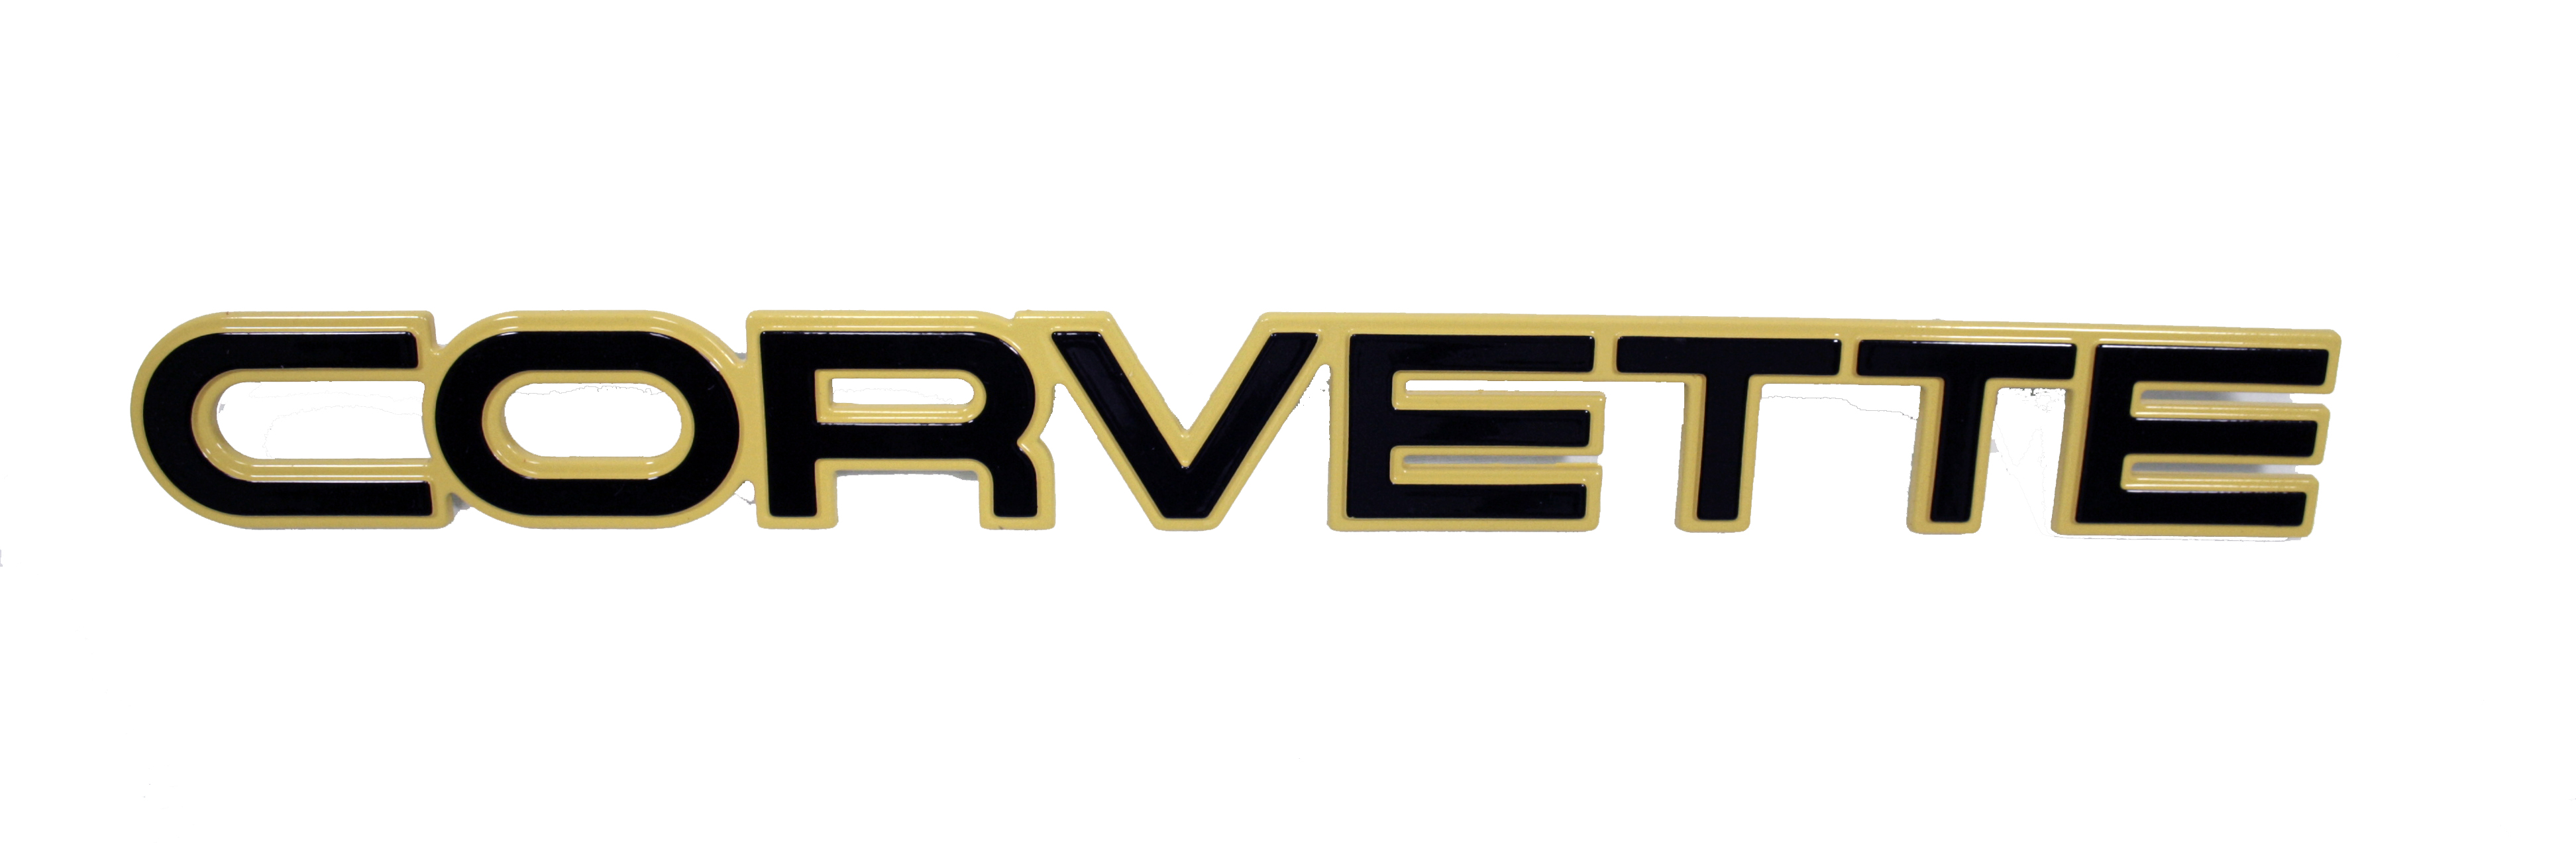 1984-1985 Corvette Rear Bumper Emblem 